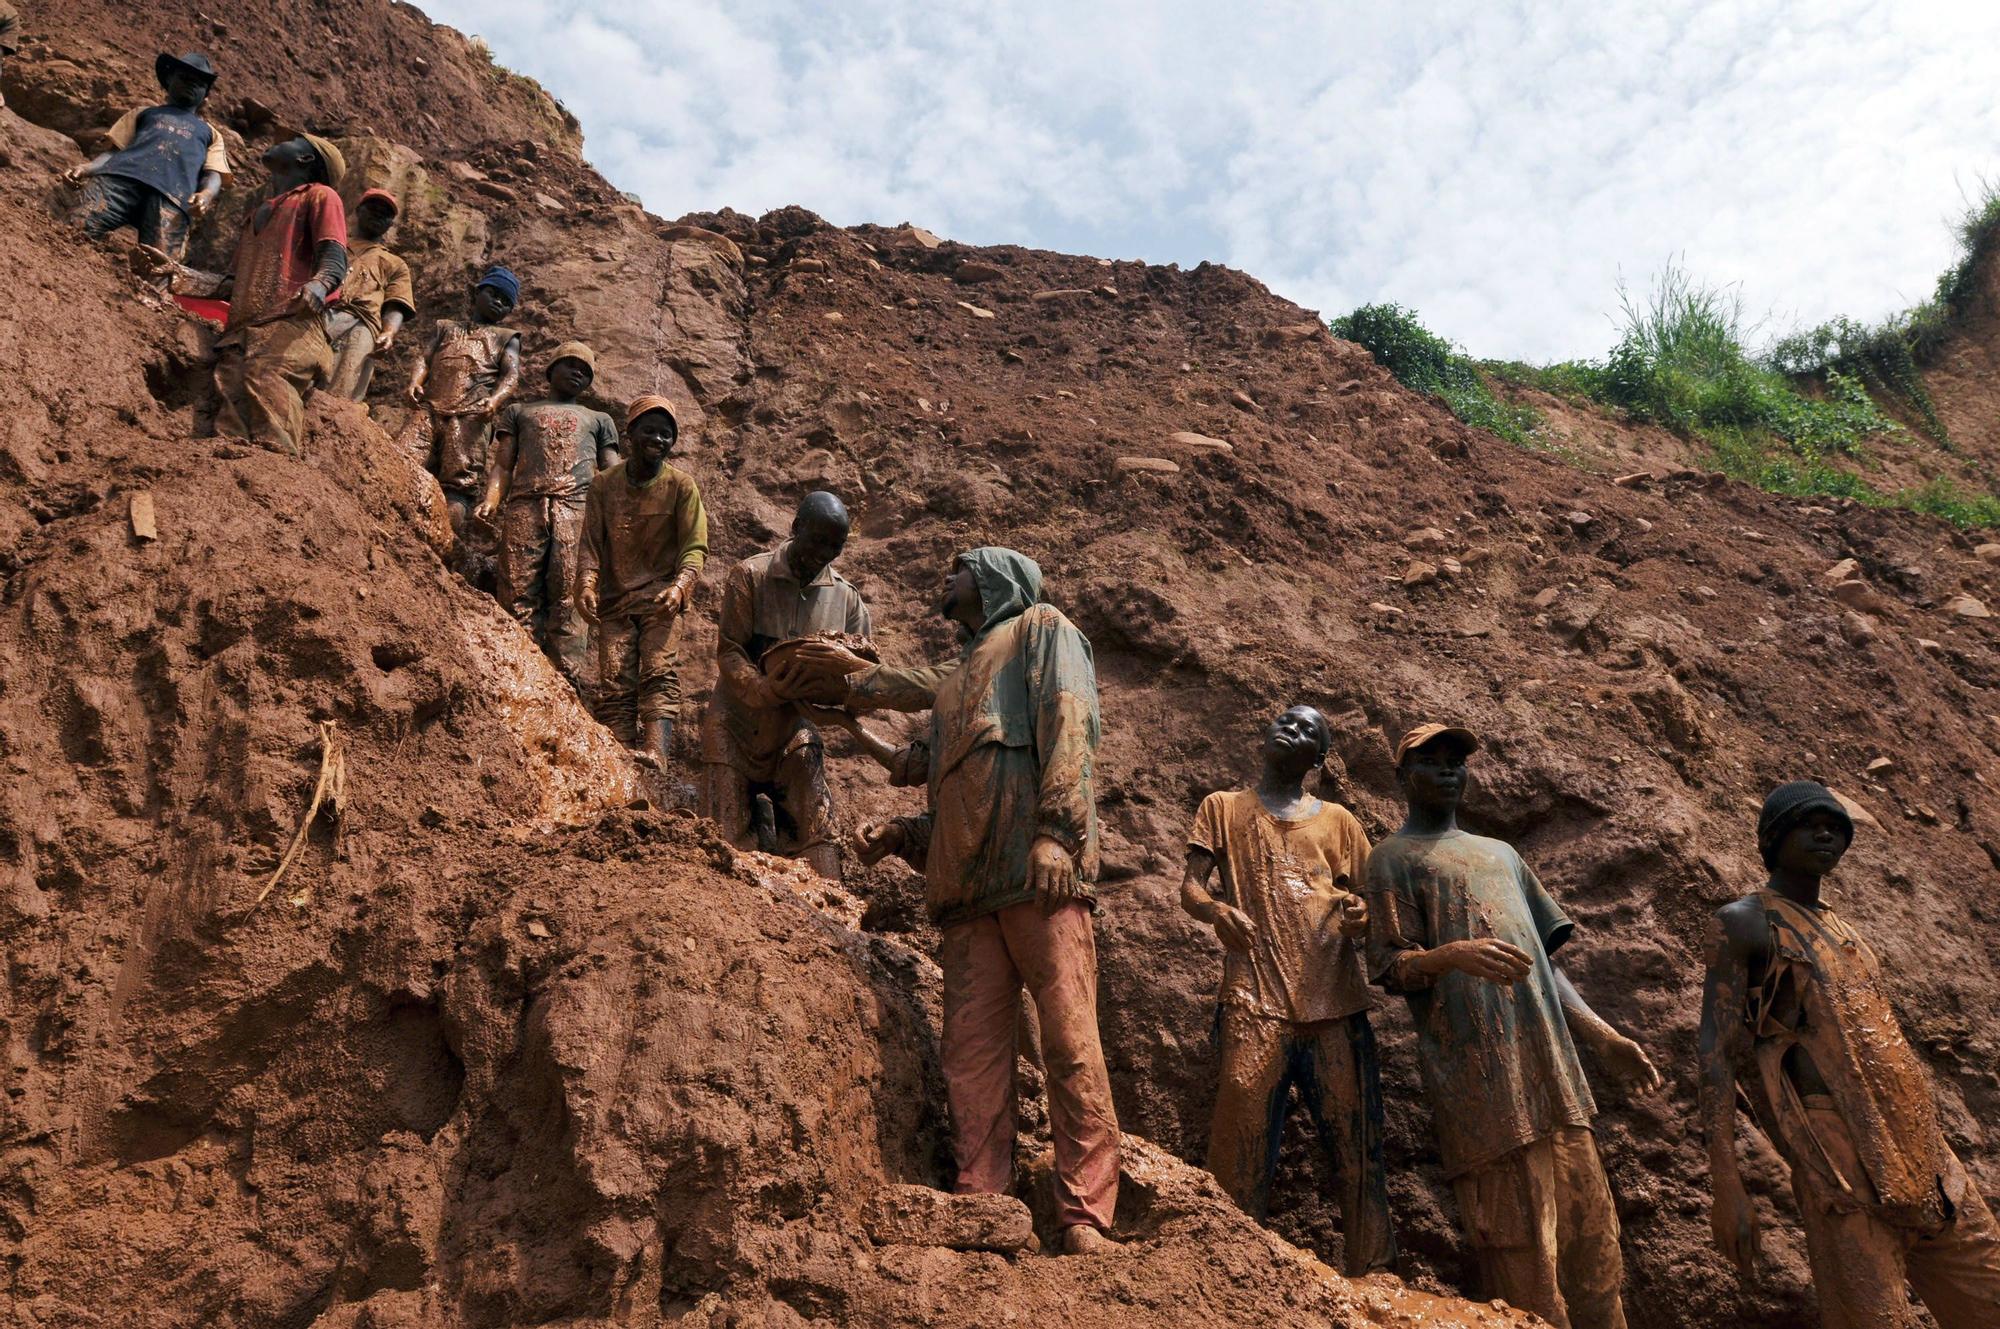 Nuestras baterías están manchadas de sangre: así es la explotación infantil  en las minas de cobalto del Congo